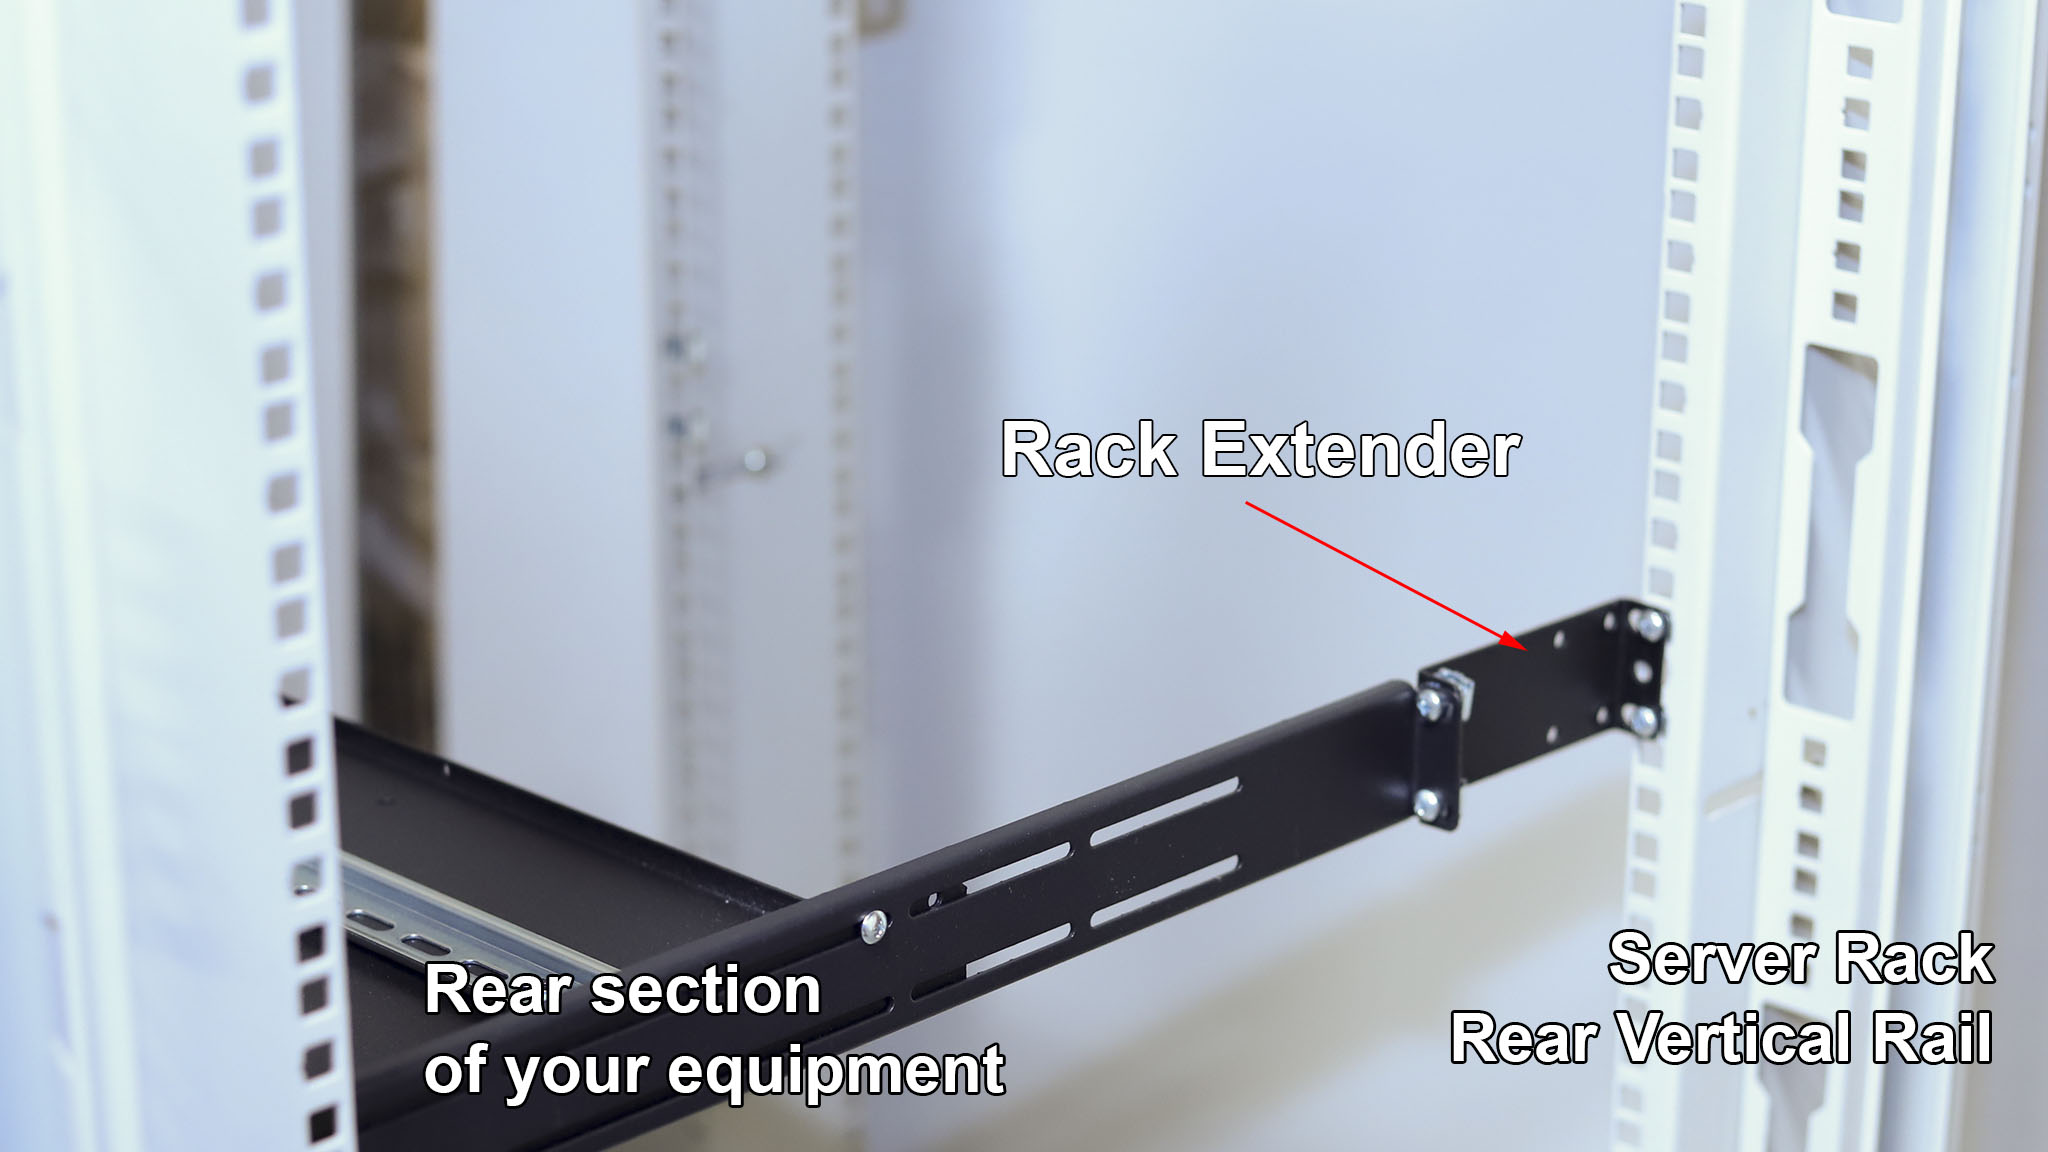 What is IAB104V10-4U rack extender